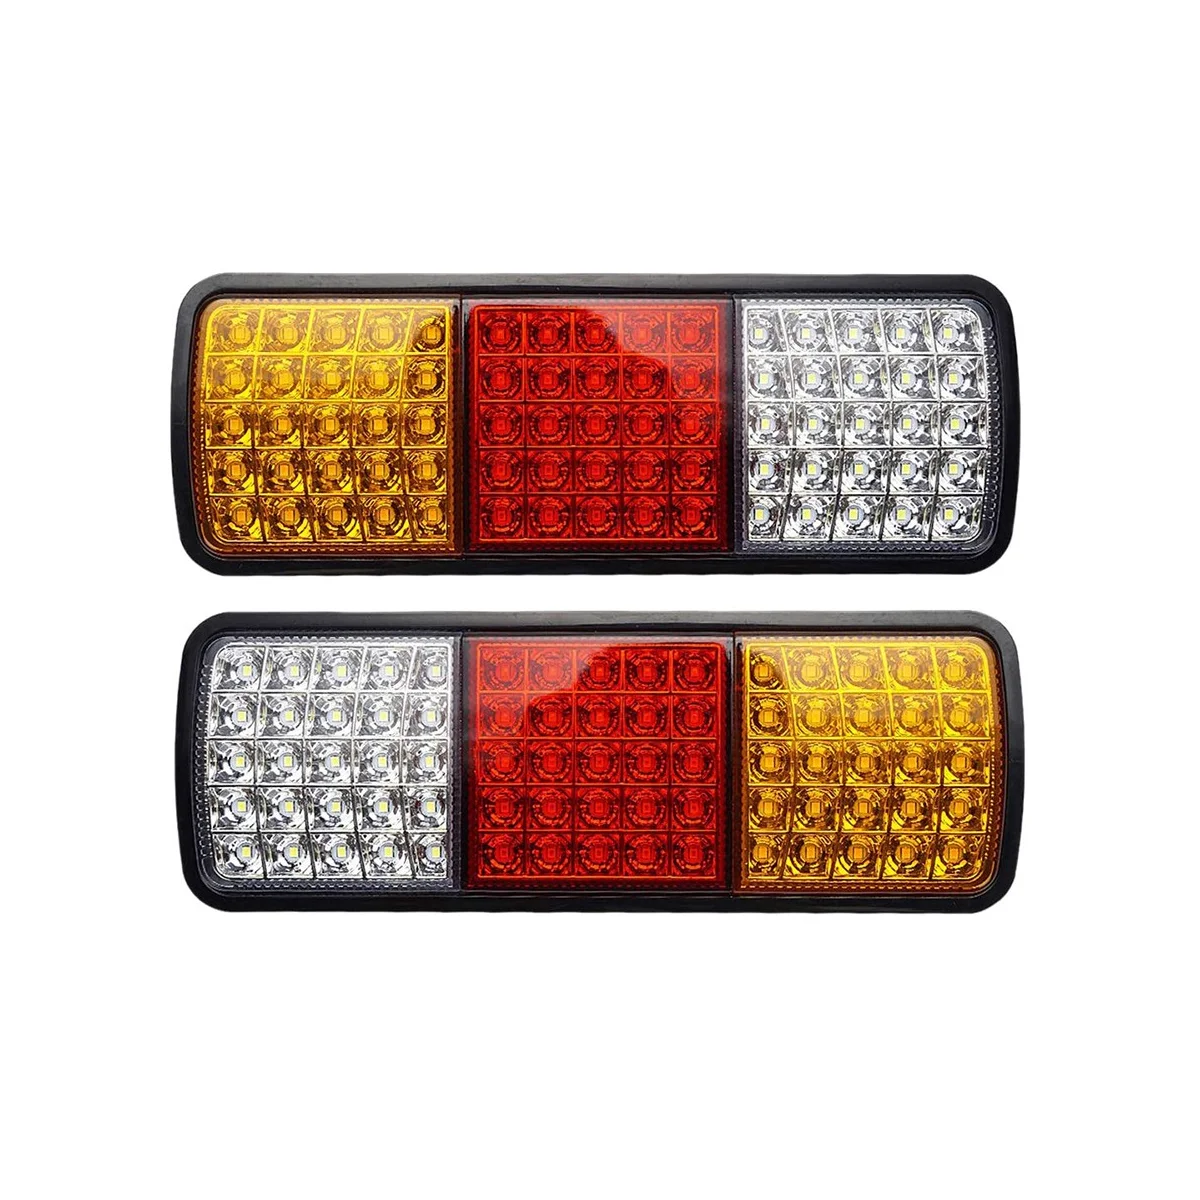 2шт 12V 75 LED Водонепроницаемые Задние фонари для Грузовика RV Фургон Автобус Прицеп Огни Индикатор сигнала Торможения Стоп Сигналы заднего хода